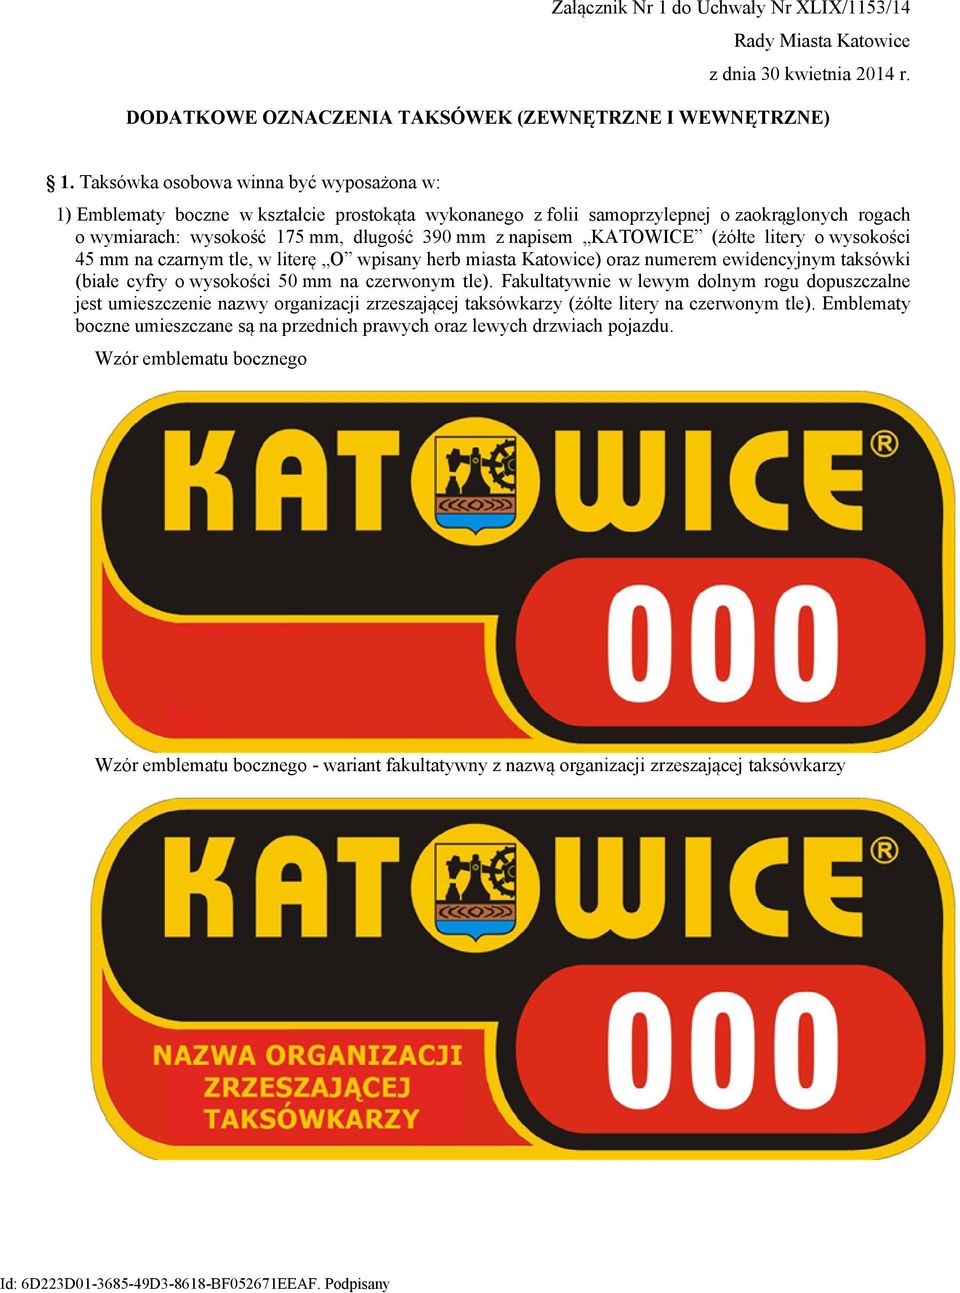 KATOWICE (żółte litery o wysokości 45 mm na czarnym tle, w literę O wpisany herb miasta Katowice) oraz numerem ewidencyjnym taksówki (białe cyfry o wysokości 50 mm na czerwonym tle).